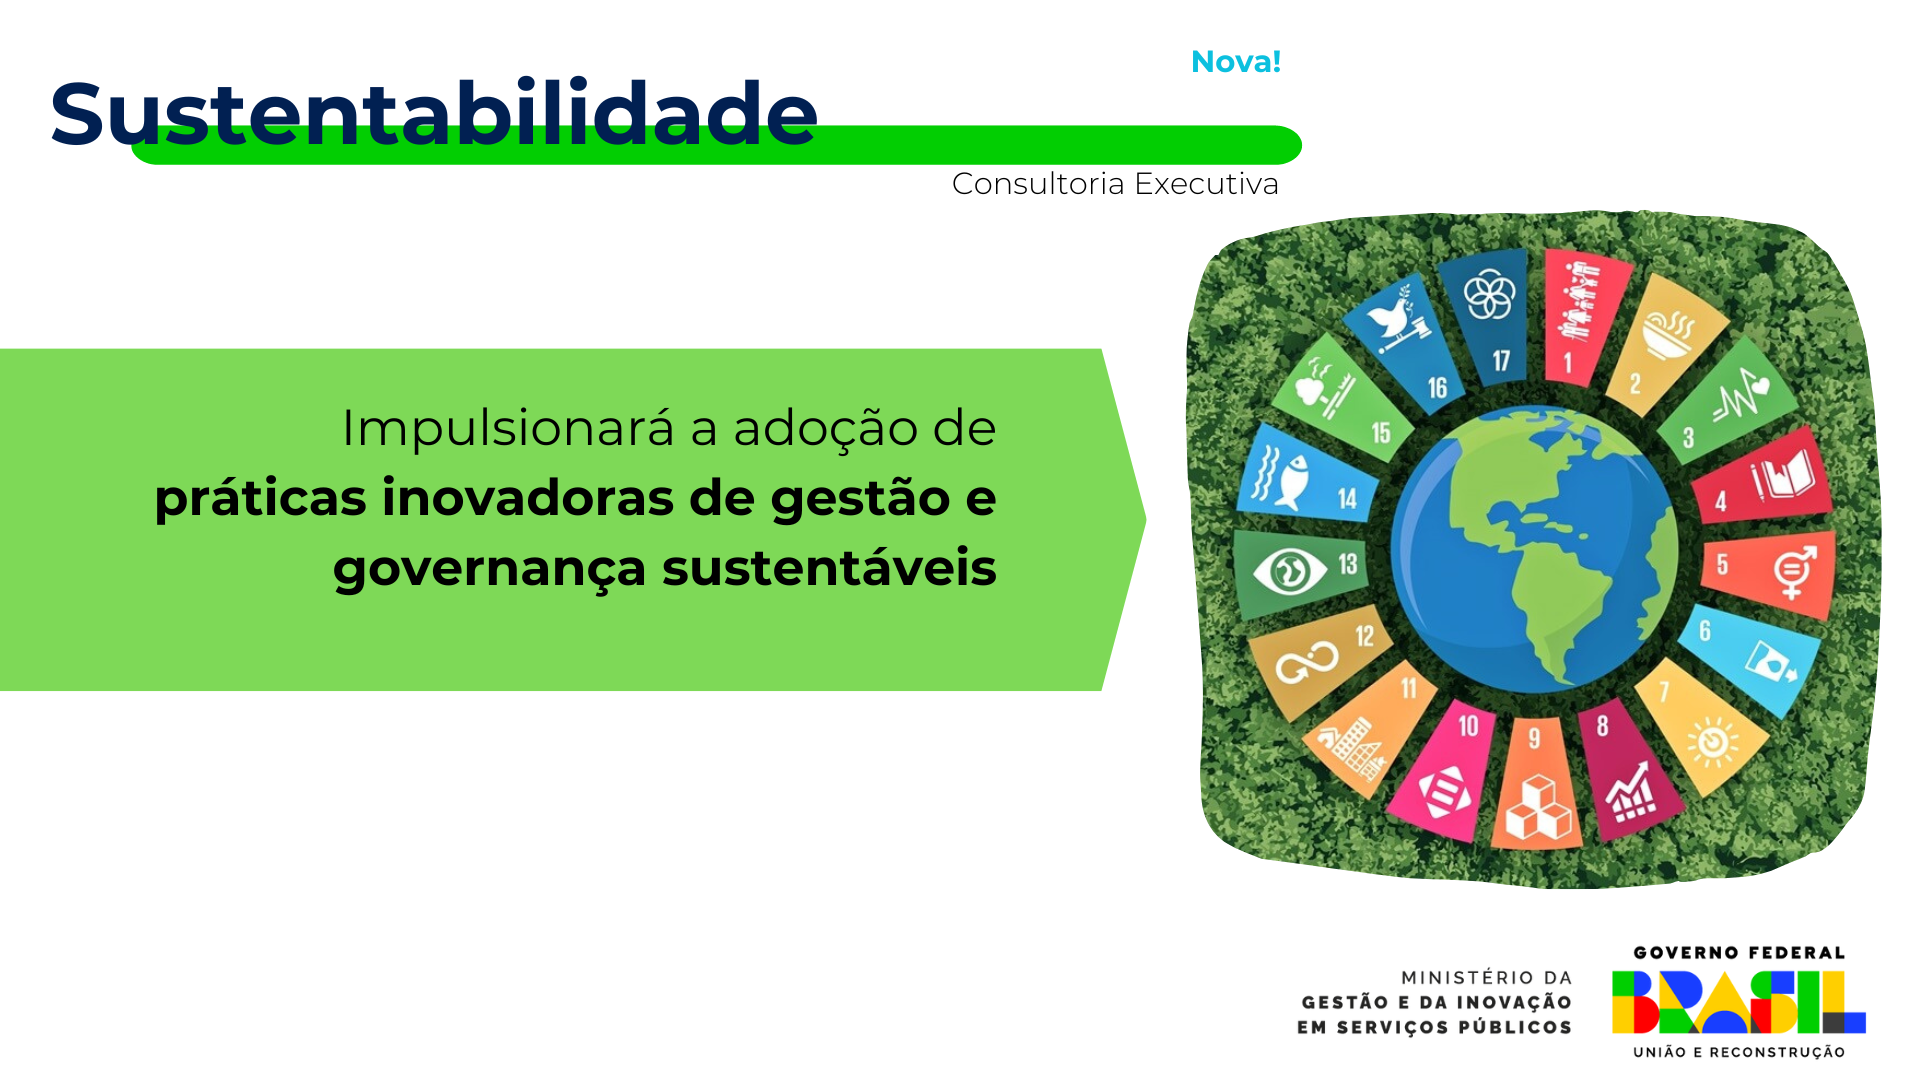 Sustentabilidade — Ministério Da Gestão E Da Inovação Em Serviços Públicos 5232